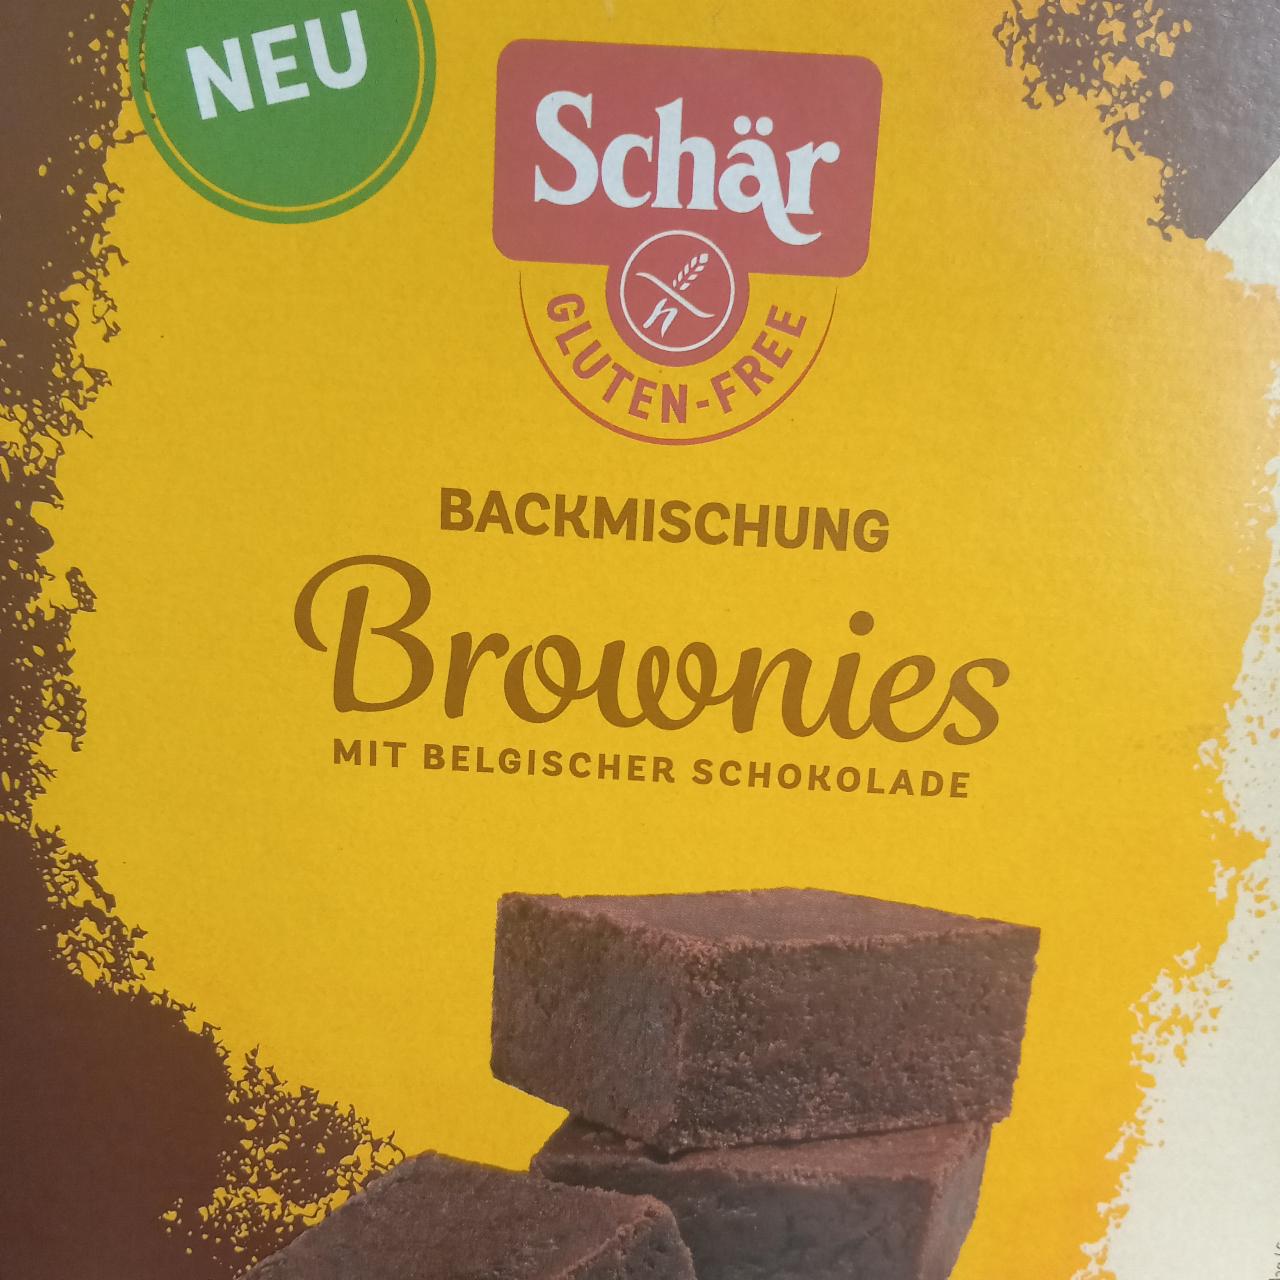 Fotografie - Backmischung Brownies Schär